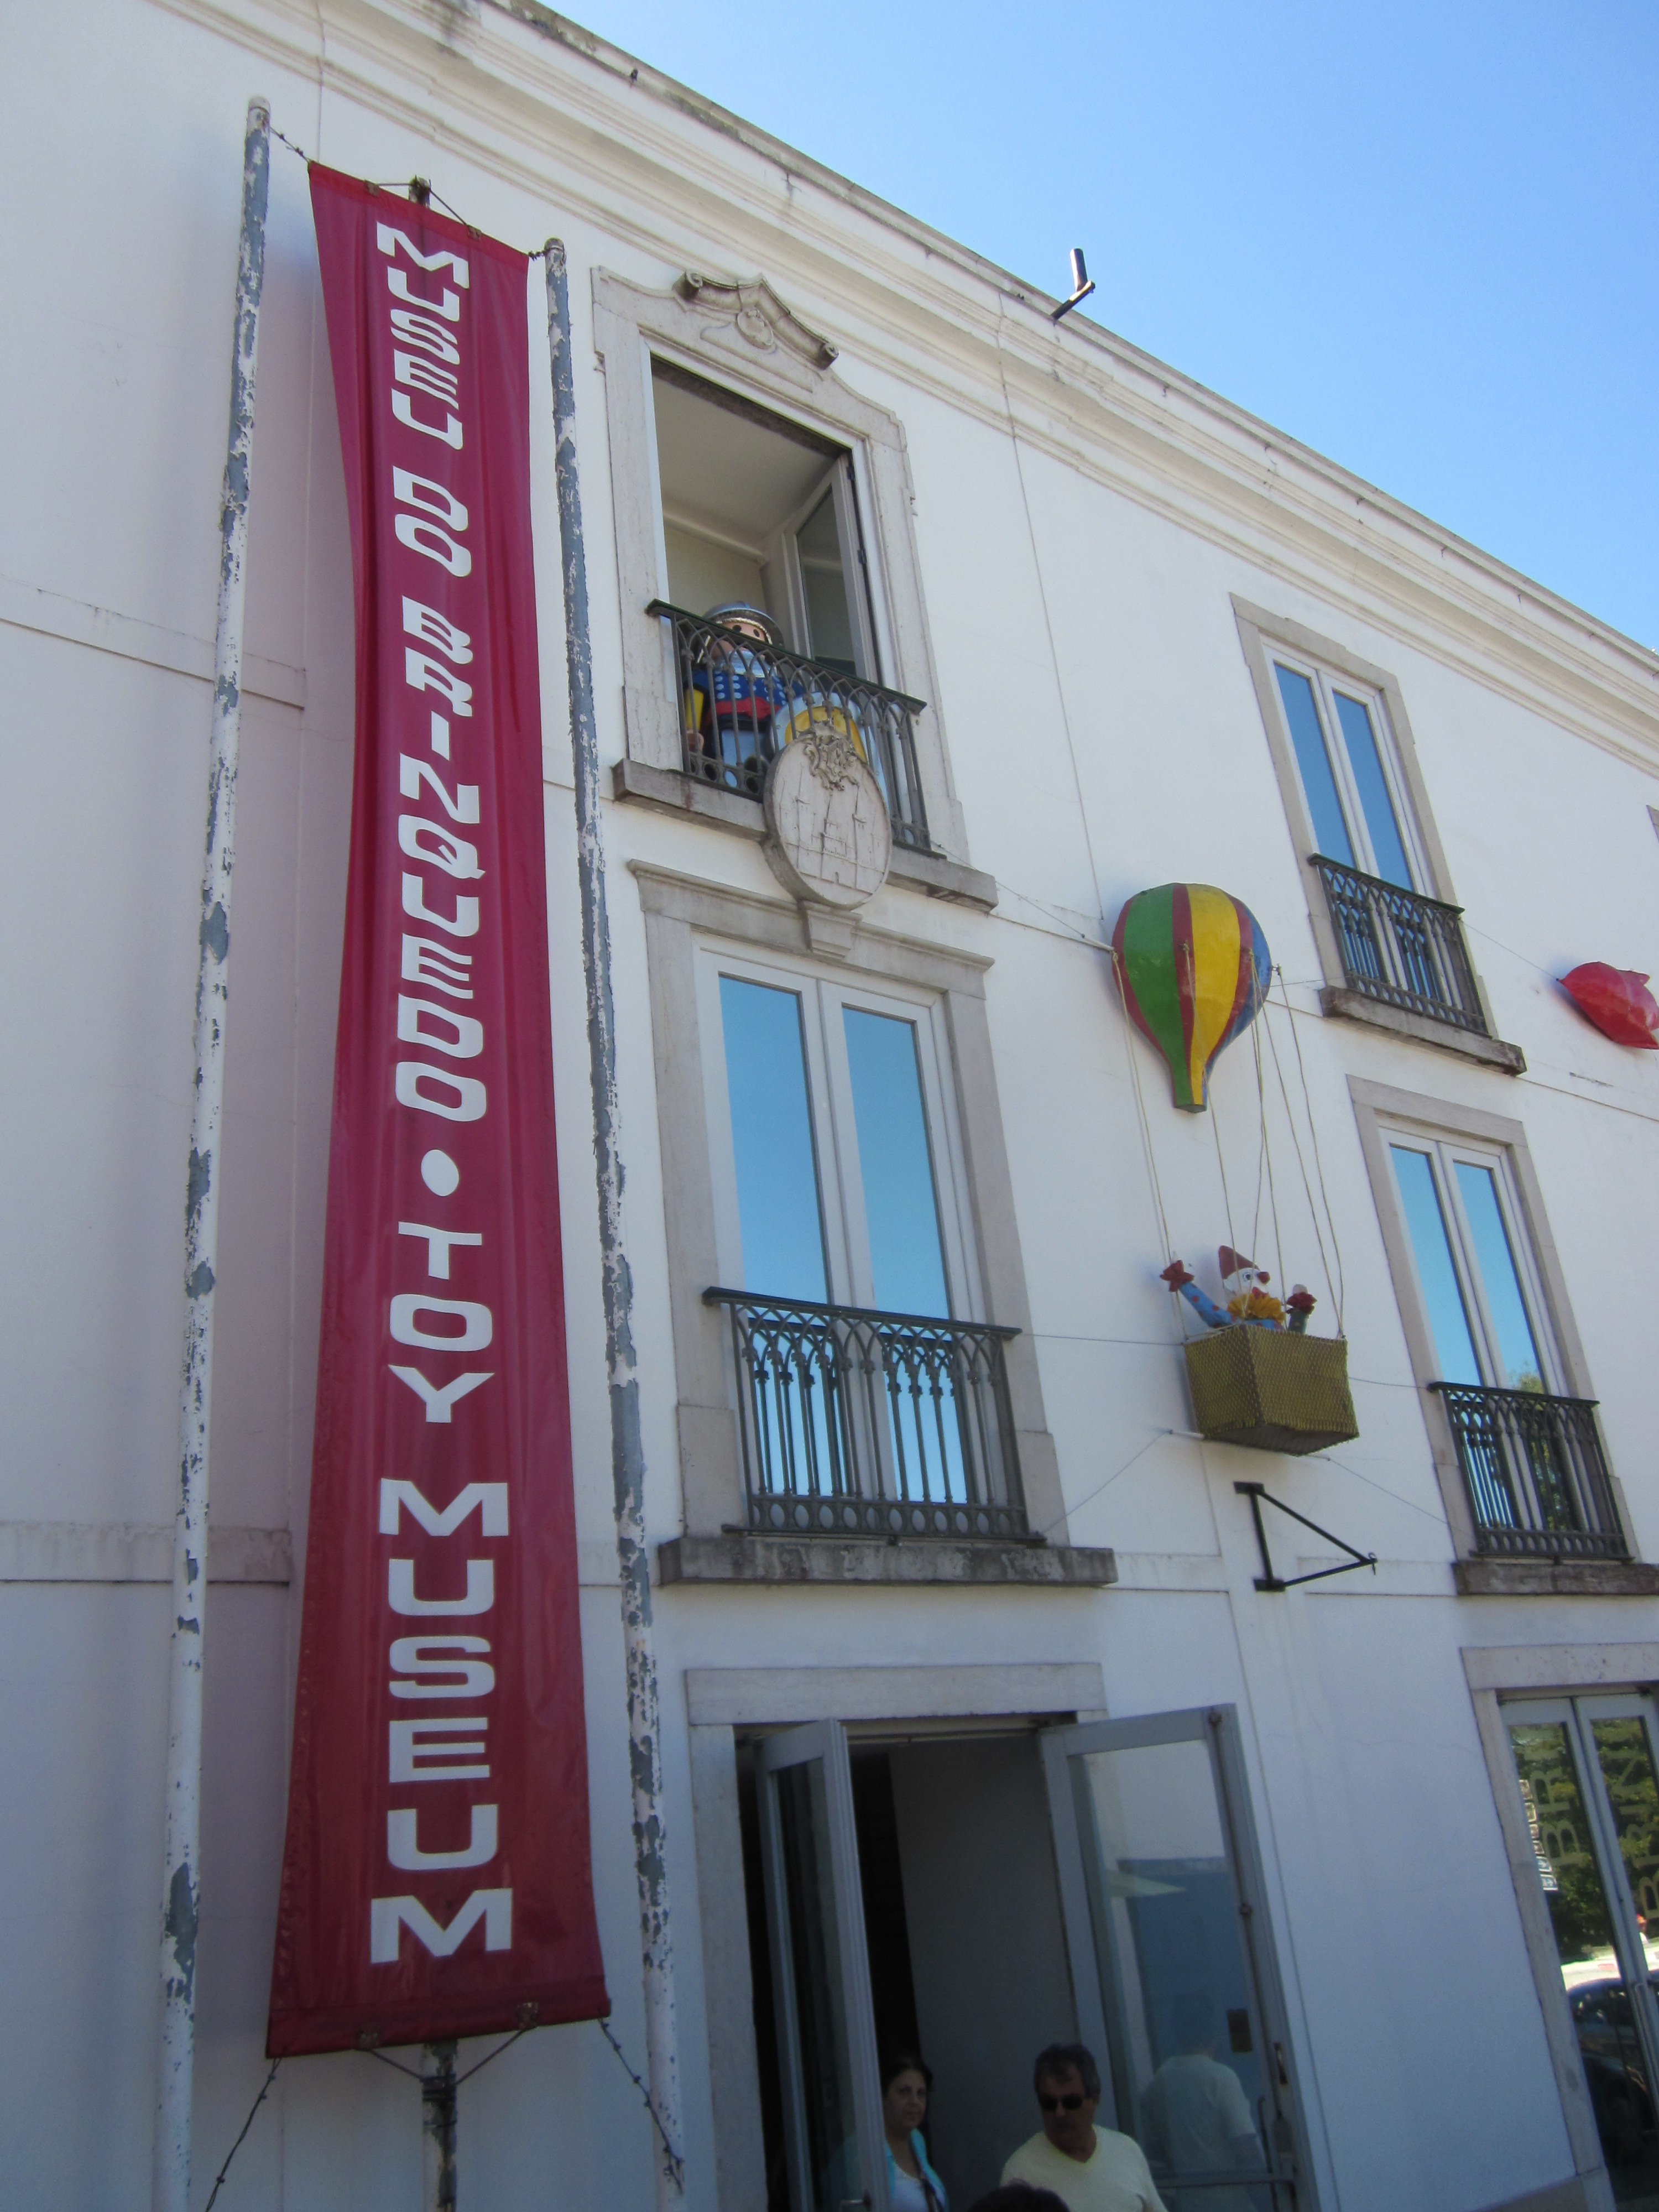 Foto: El museo del juguete - Sintra (Lisbon), Portugal